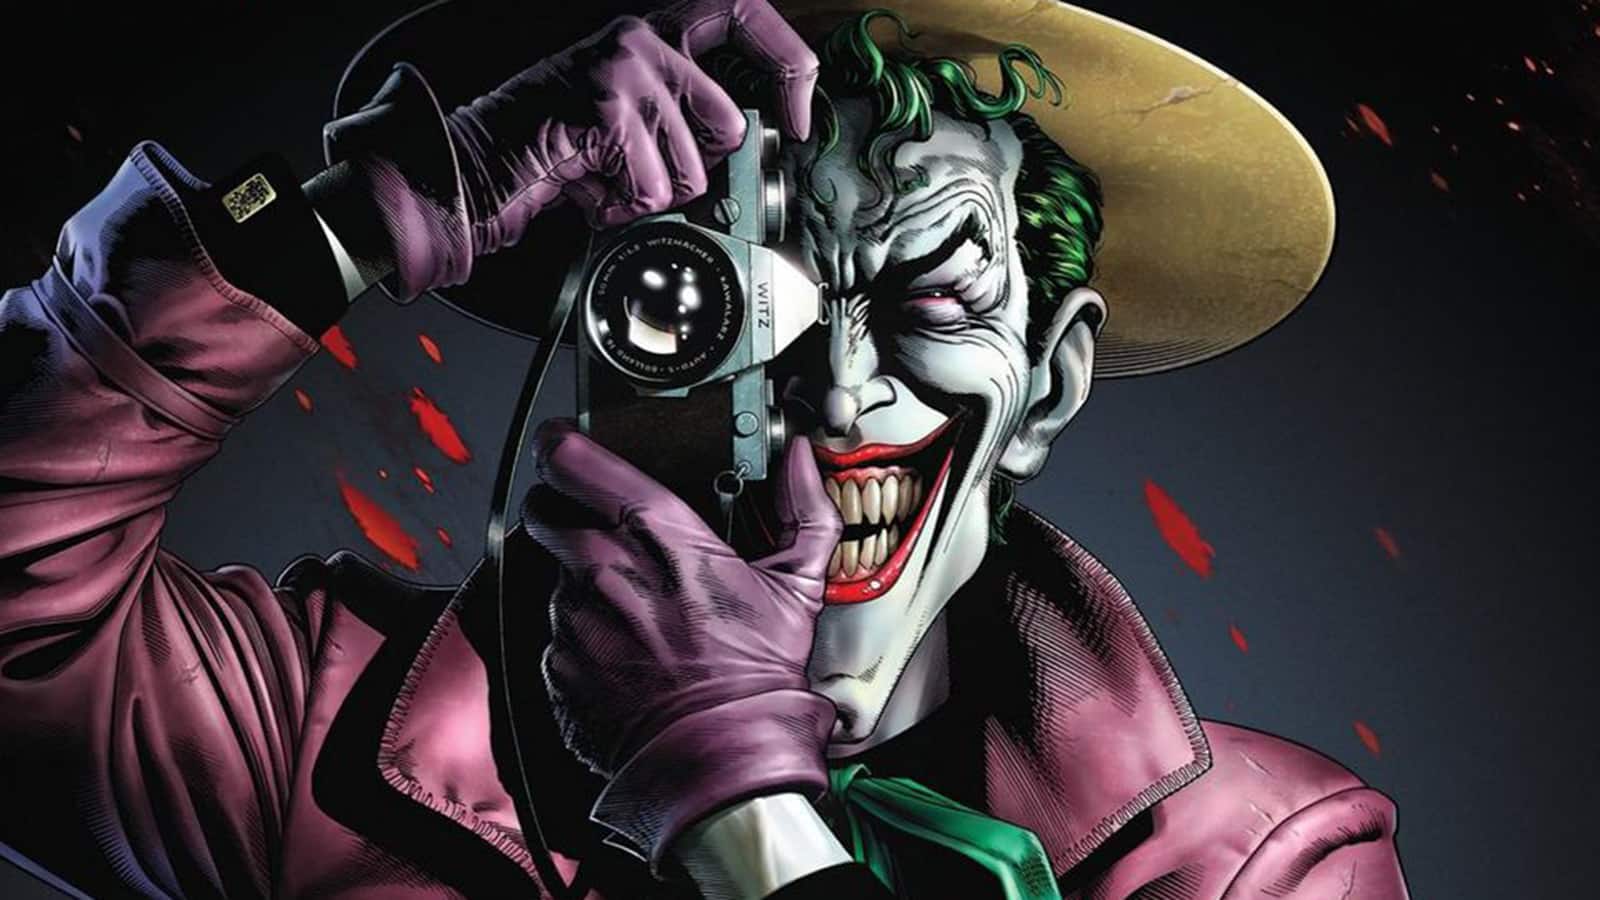 The Joker in Batman: The Killing Joke